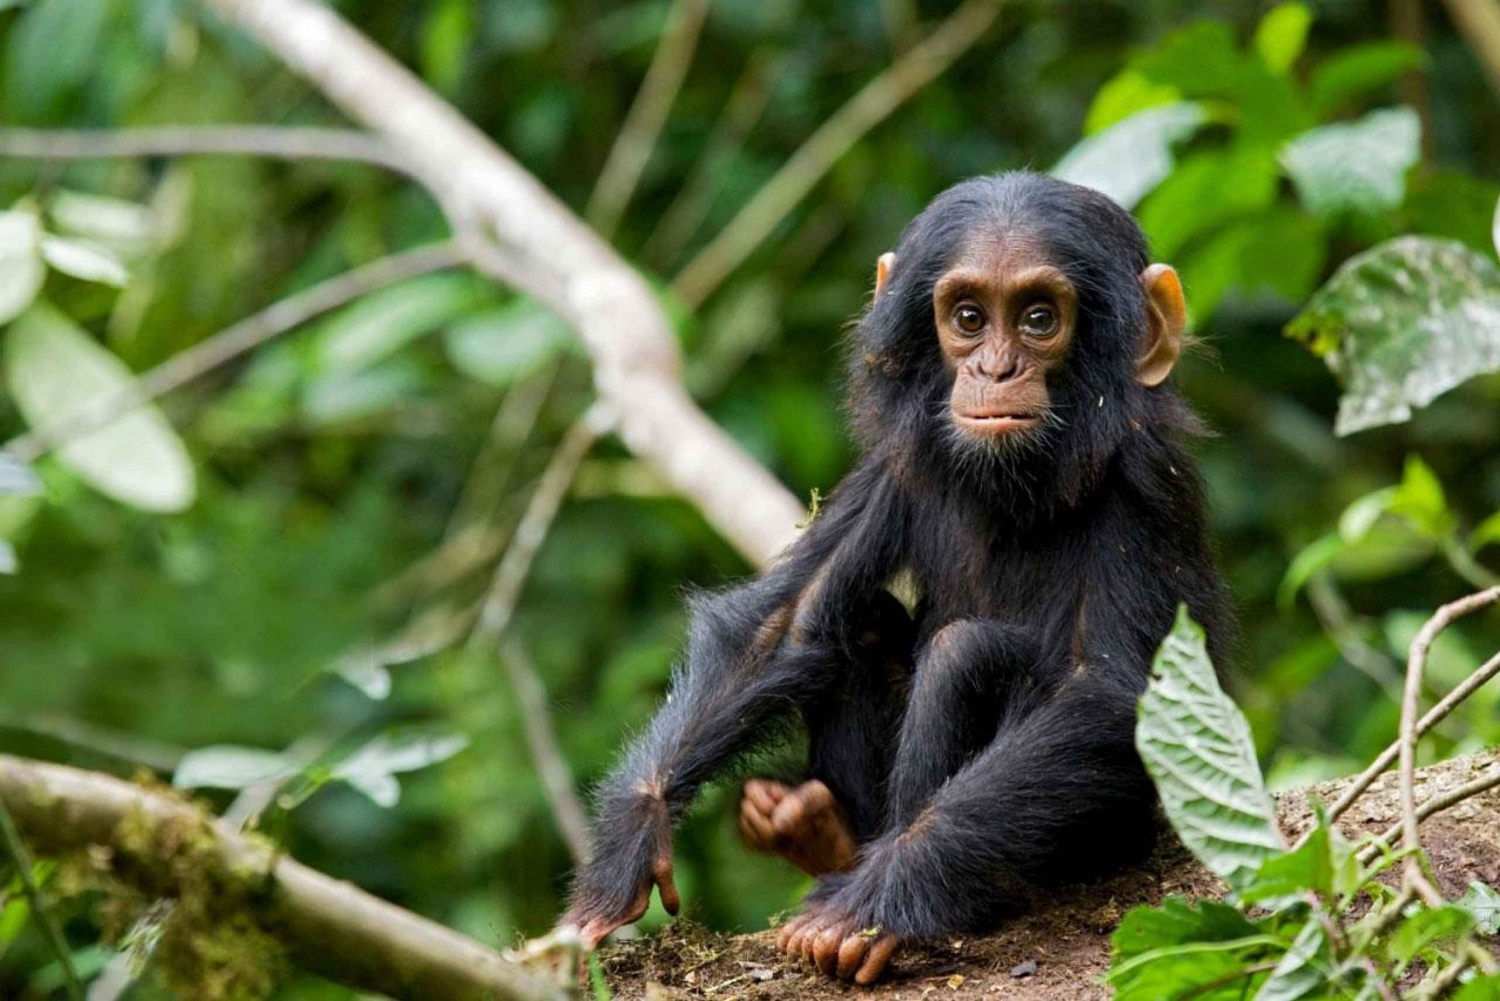 Three-day chimpanzee trekking adventure in Mahale NP